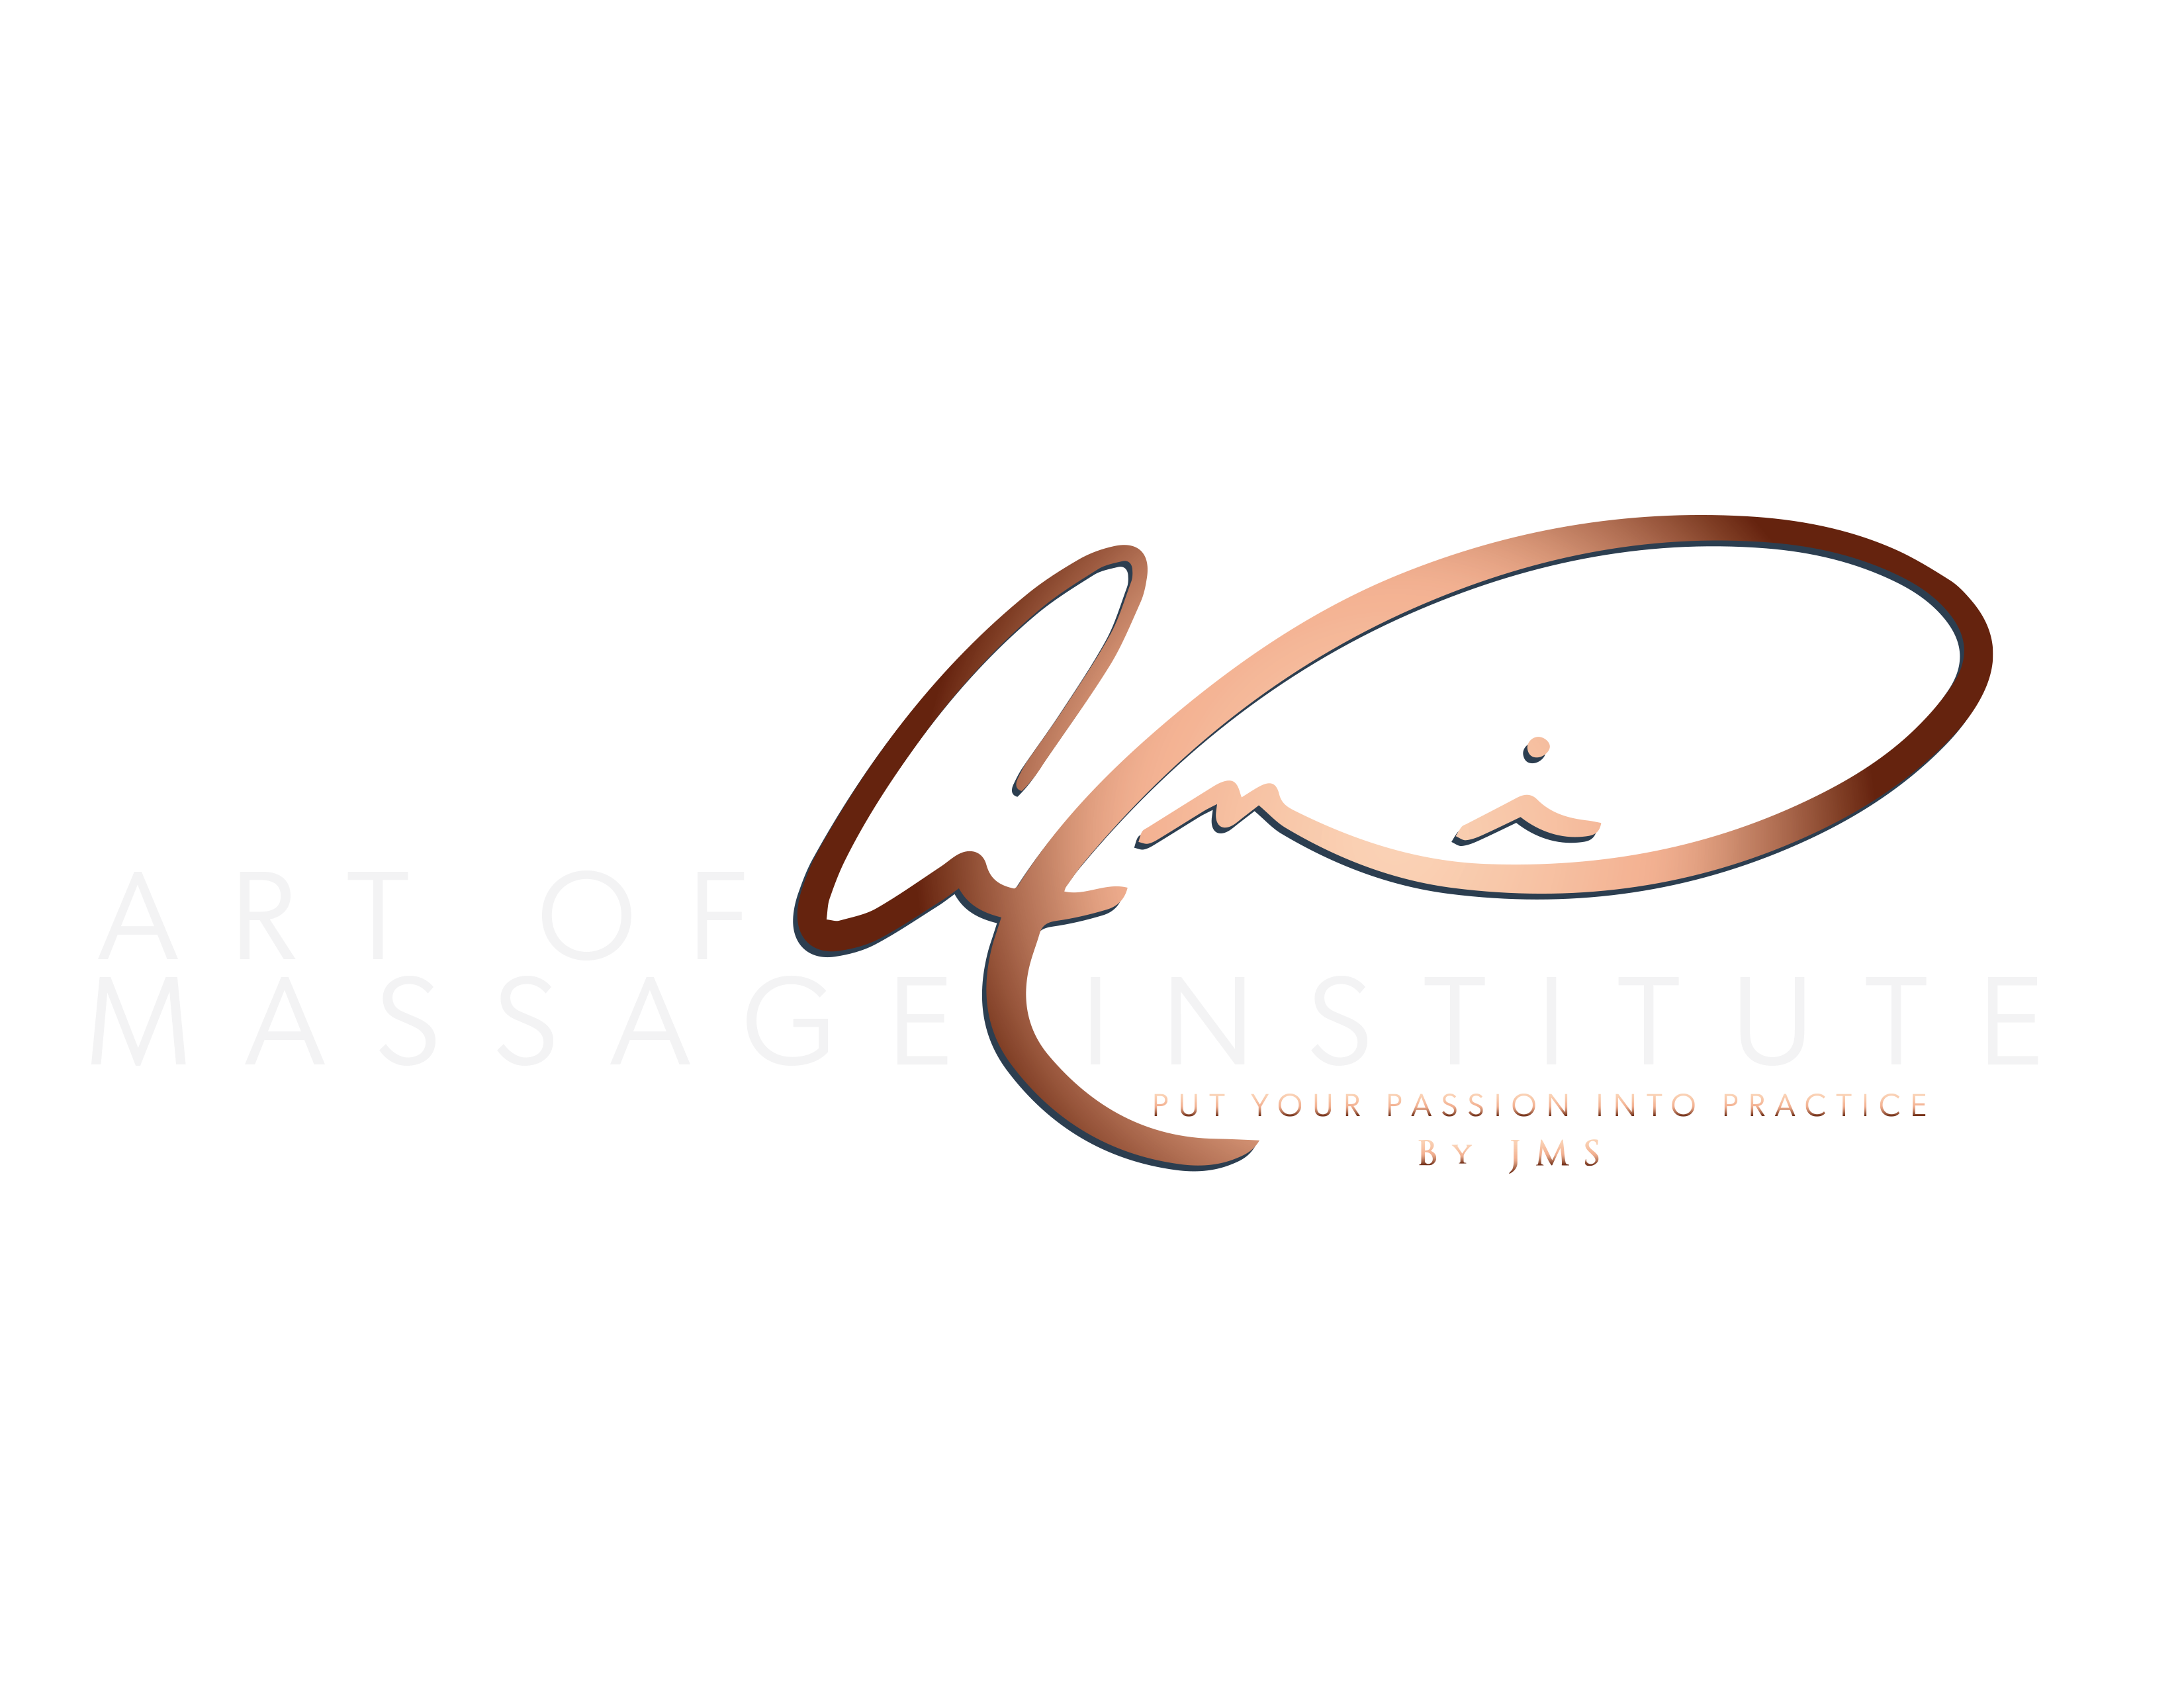 Art of Massage Institute